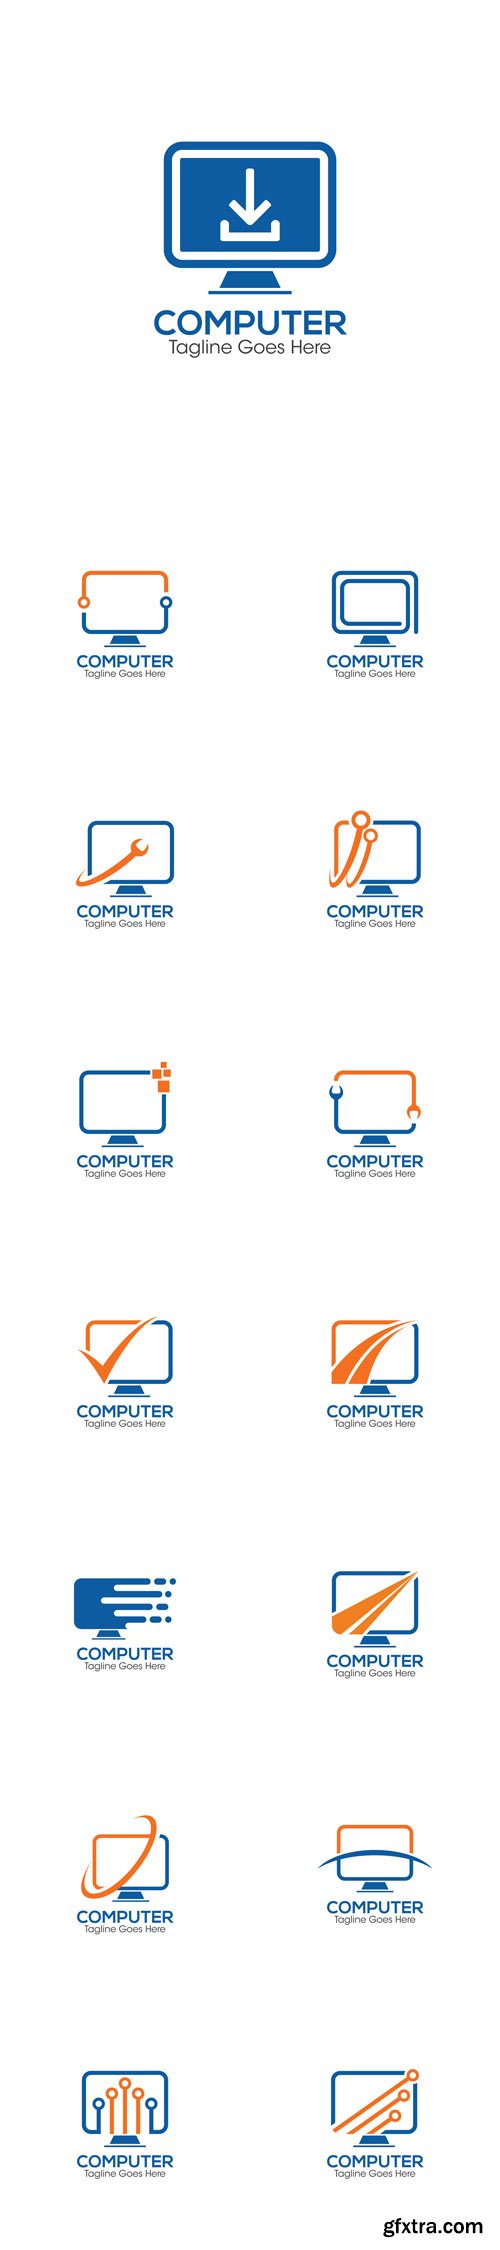 Vector Set - Computer Creative Concept Logo Design Templates